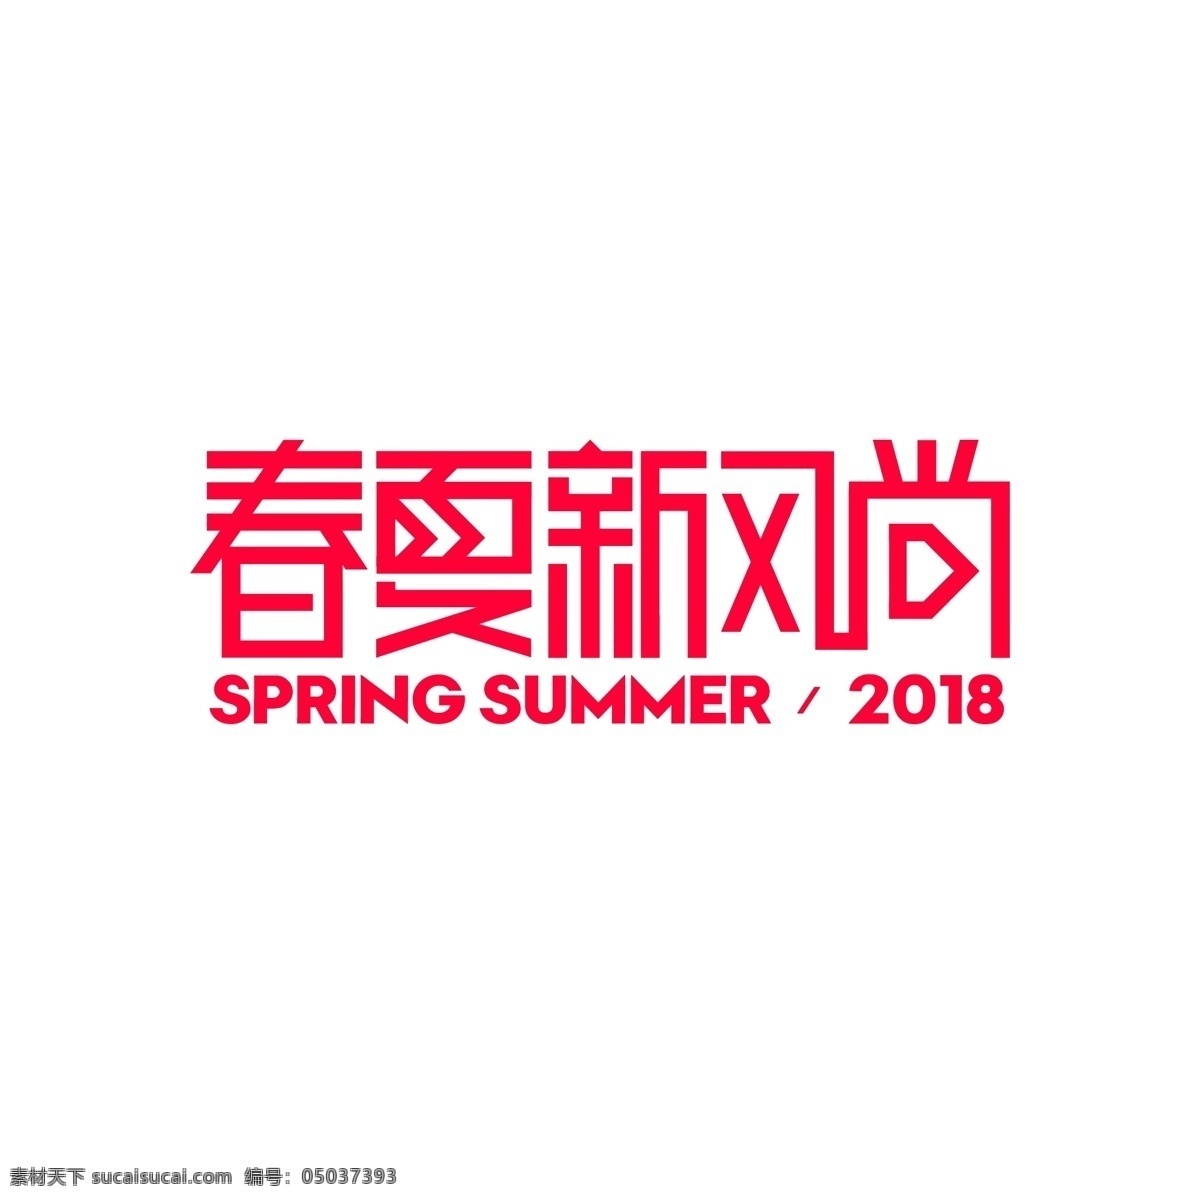 2018 春夏 新 风尚 ogo 春夏新风尚 logo 最新